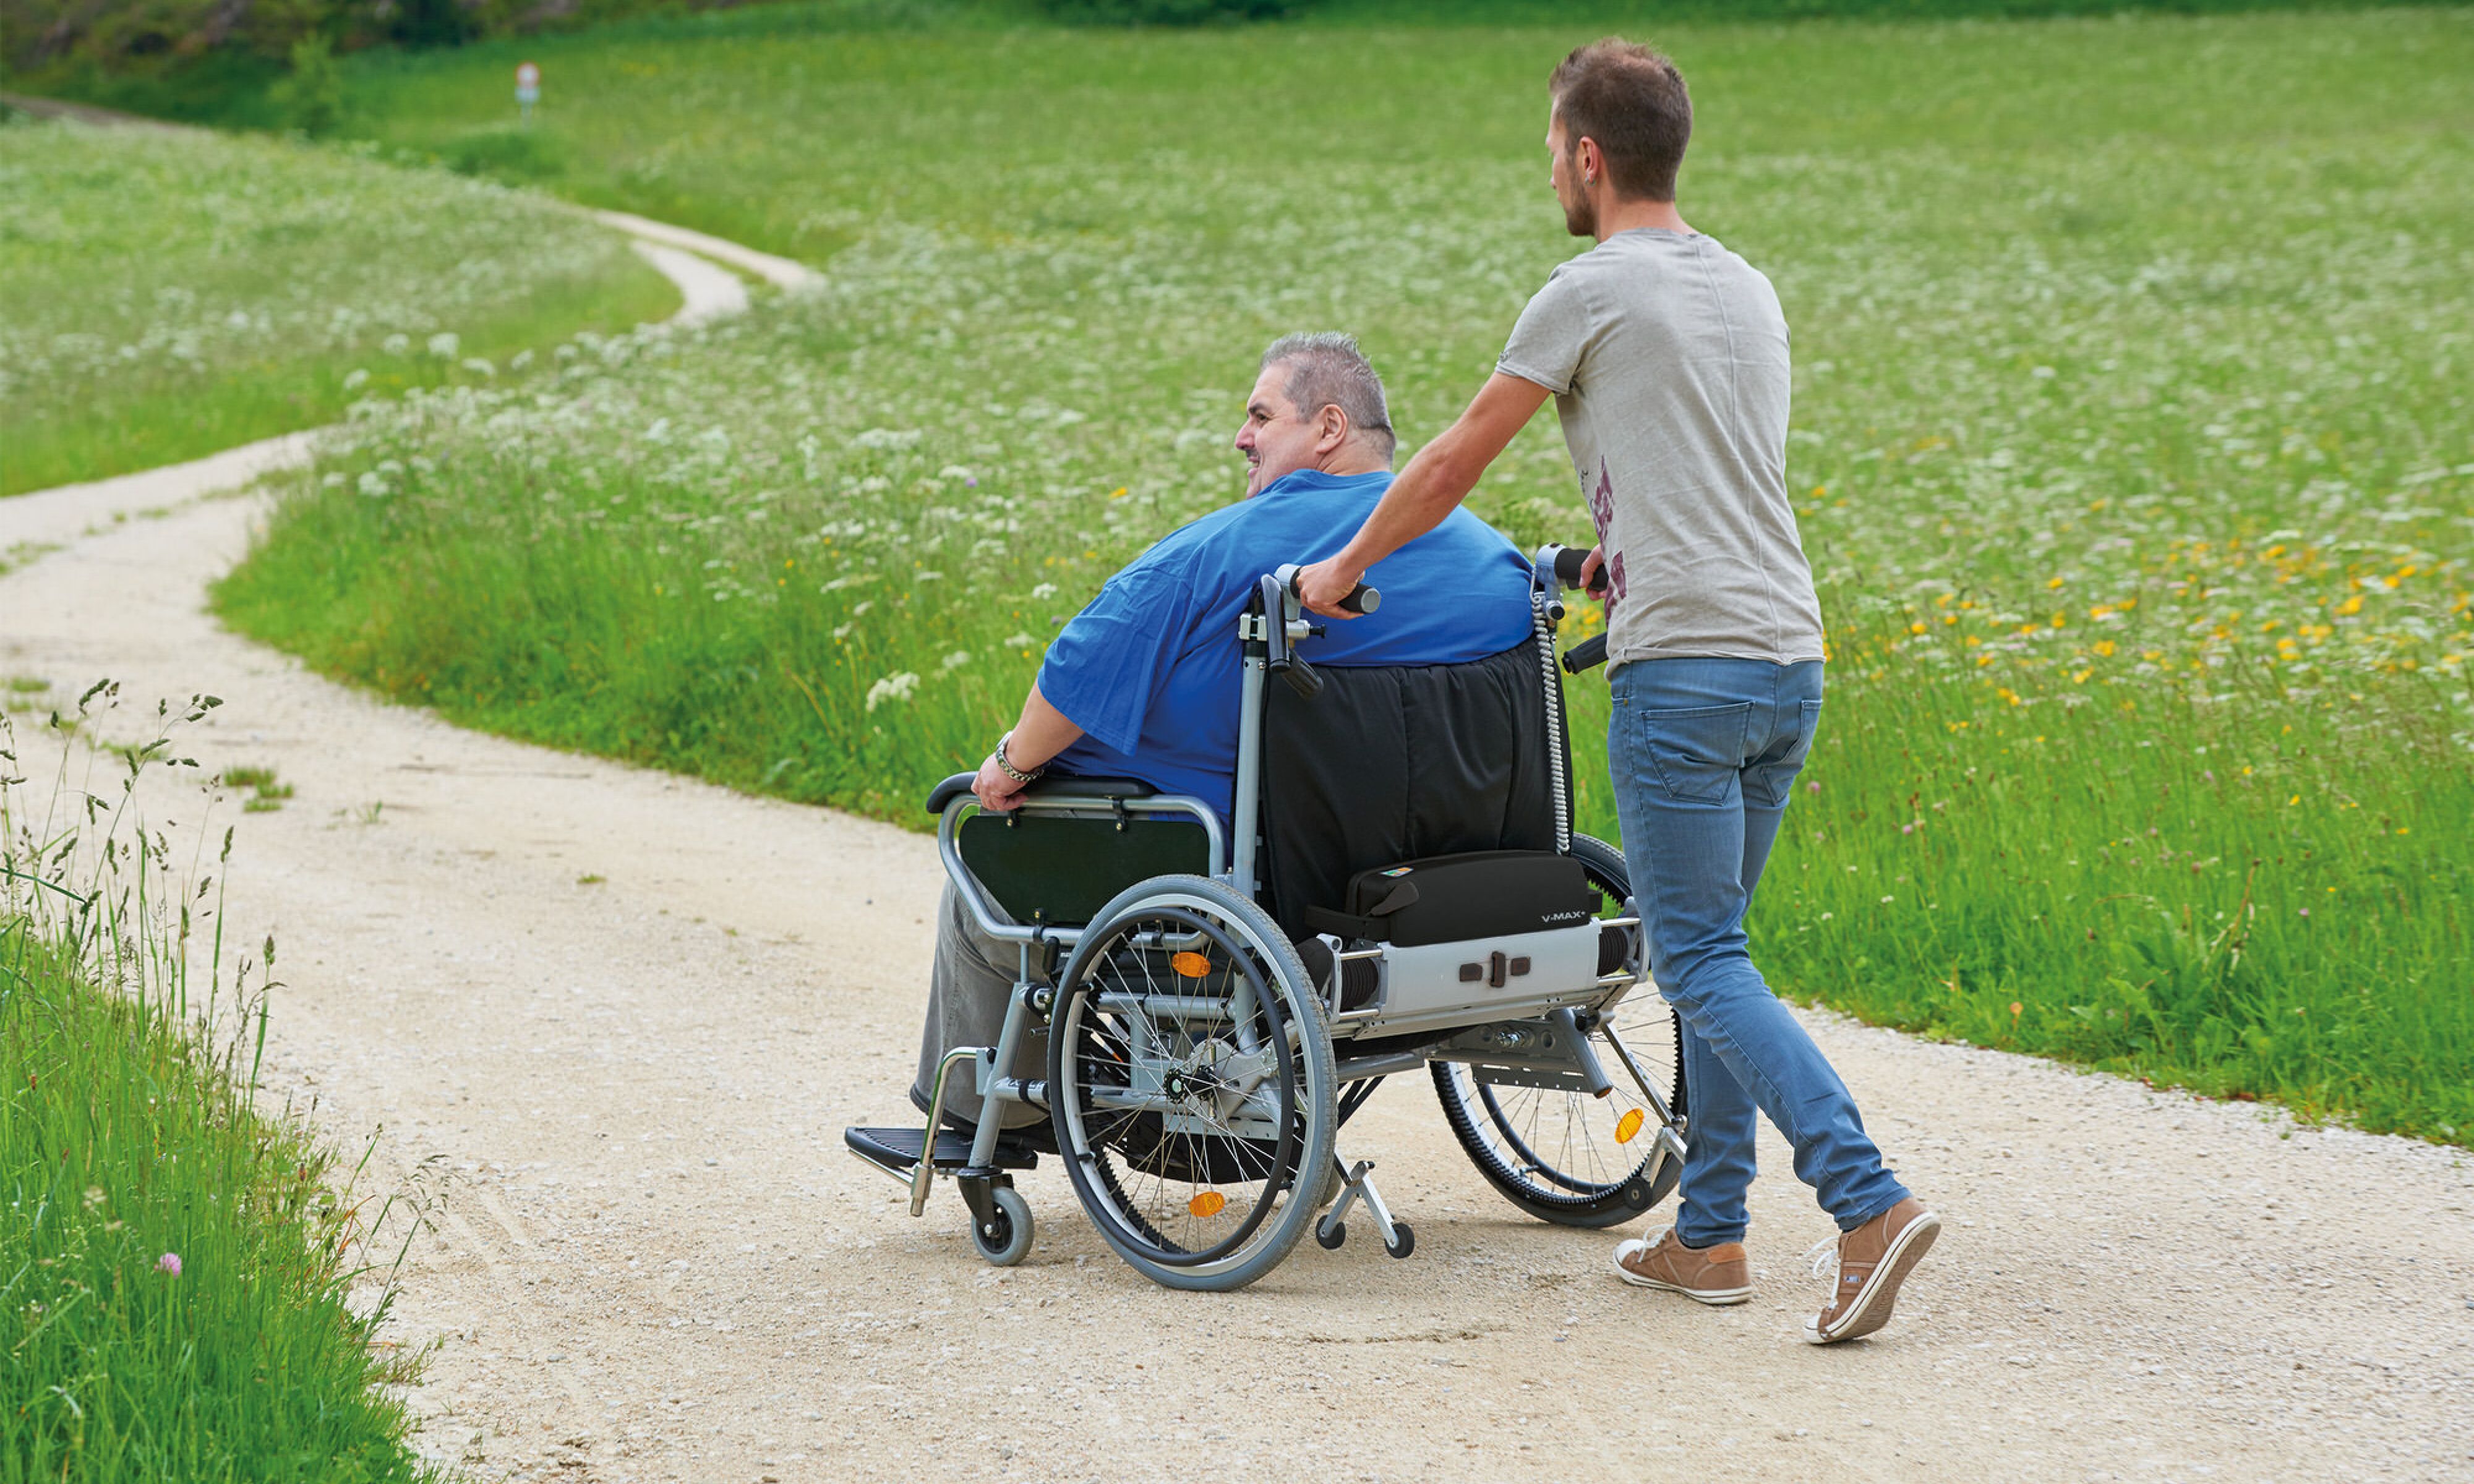 Das Bild zeigt einen sehr schlanken jungen Mann, der einen Mann mittleren Alters in einem sehr breiten Rollstuhl aufwandslos schiebt. Der Insasse nutzt aufgrund seines hohen Körpergewichtes einen Rollstuhl mit Zusatzantrieb V-MAX+, der speziell für adipöse Patienten entwickelt wurde. 